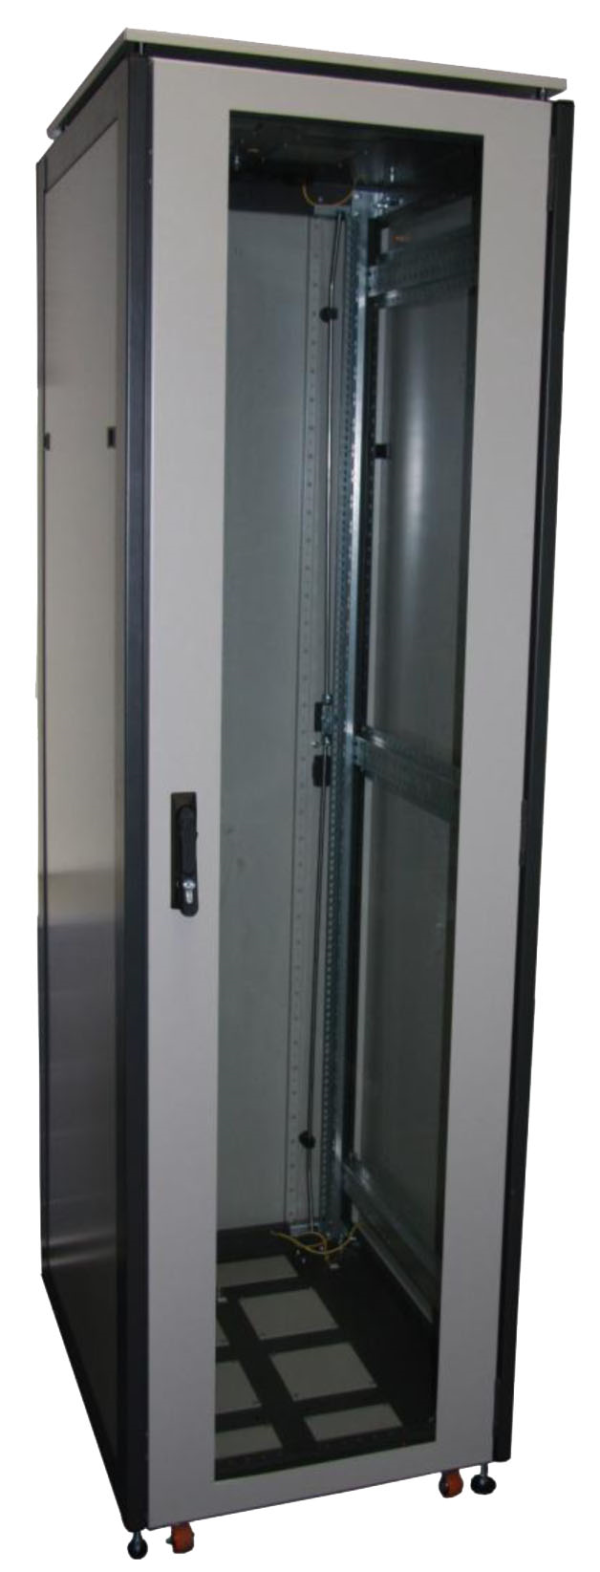 ССКТБ ТОМАСС ШТК-6810Э-00 - шкаф телекоммуникационный 19", 18U, 600х800х1000 мм, с металлической и стеклянной дверью